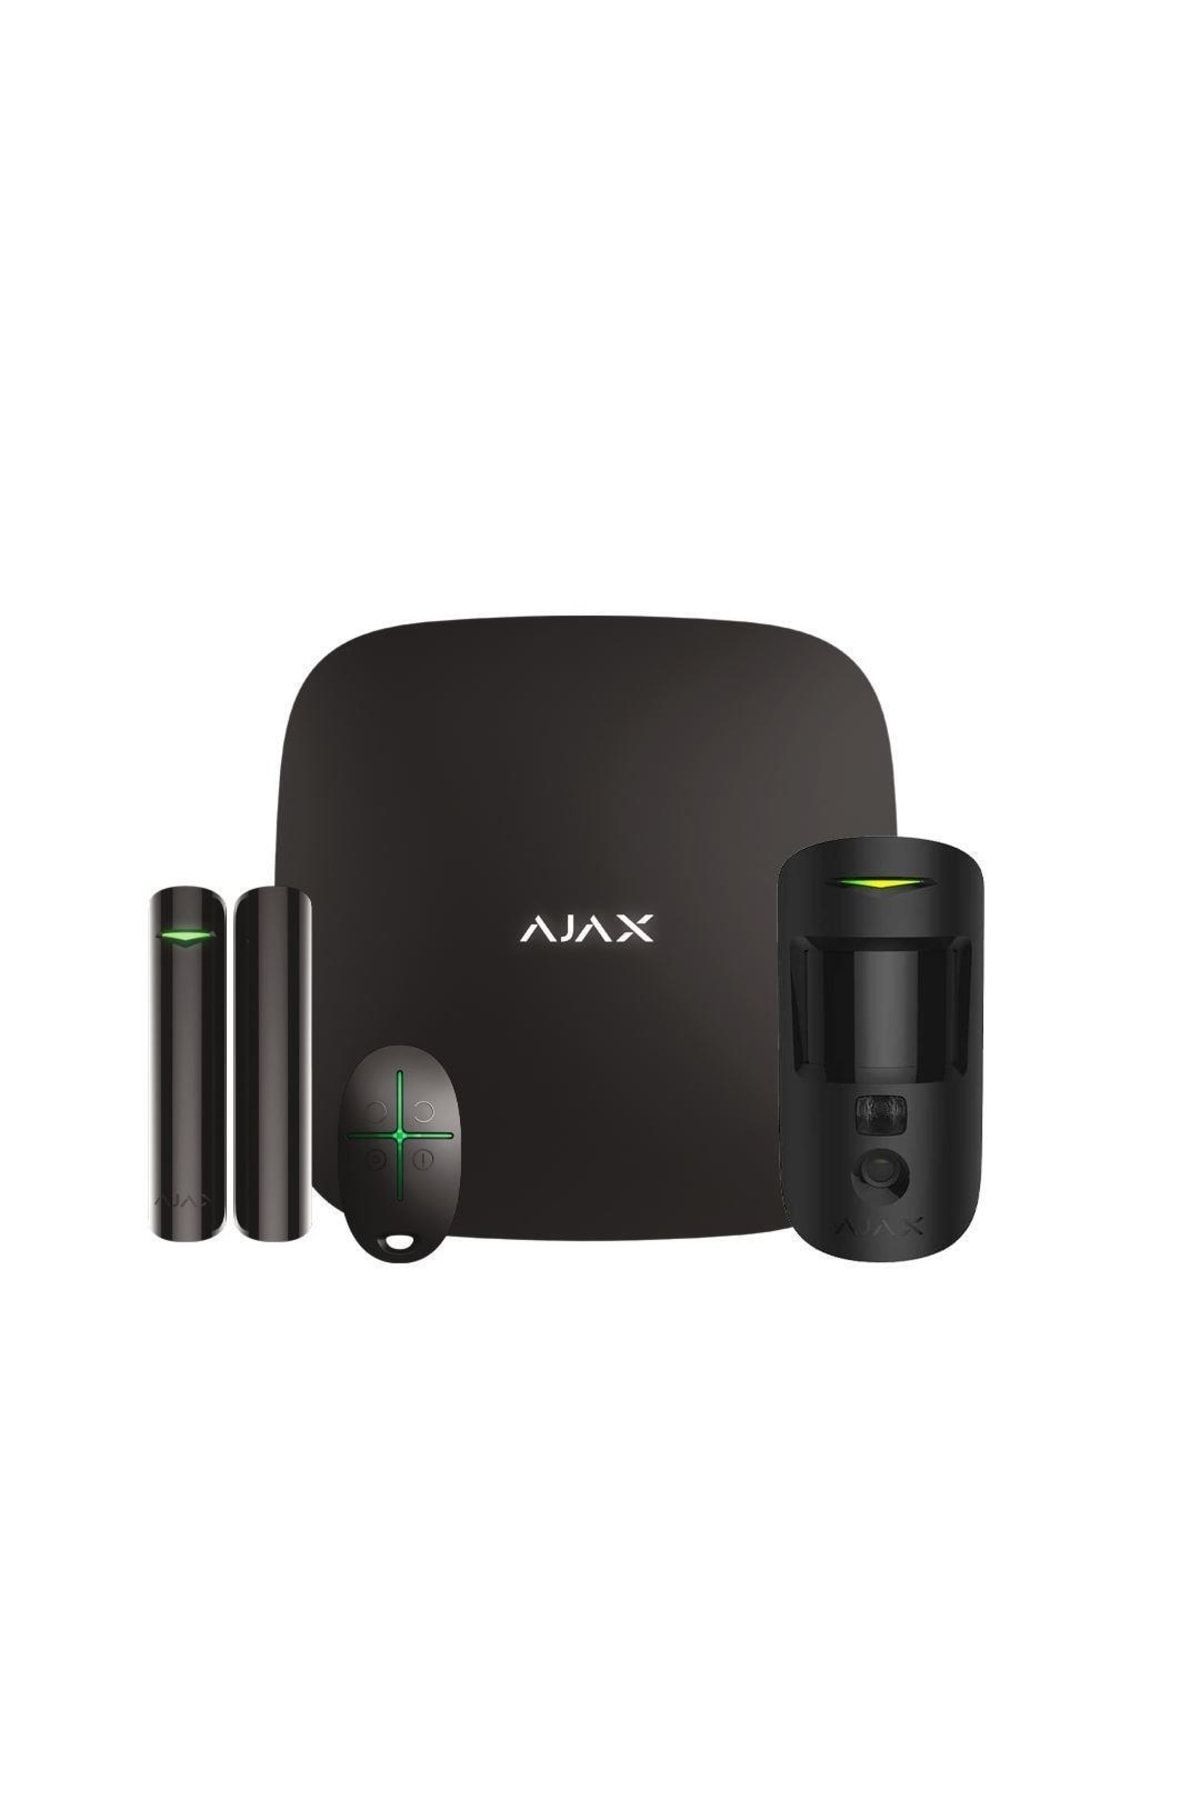 Ajax Hub Kit Starterkithub Siyah Kablosuz Alarm Seti